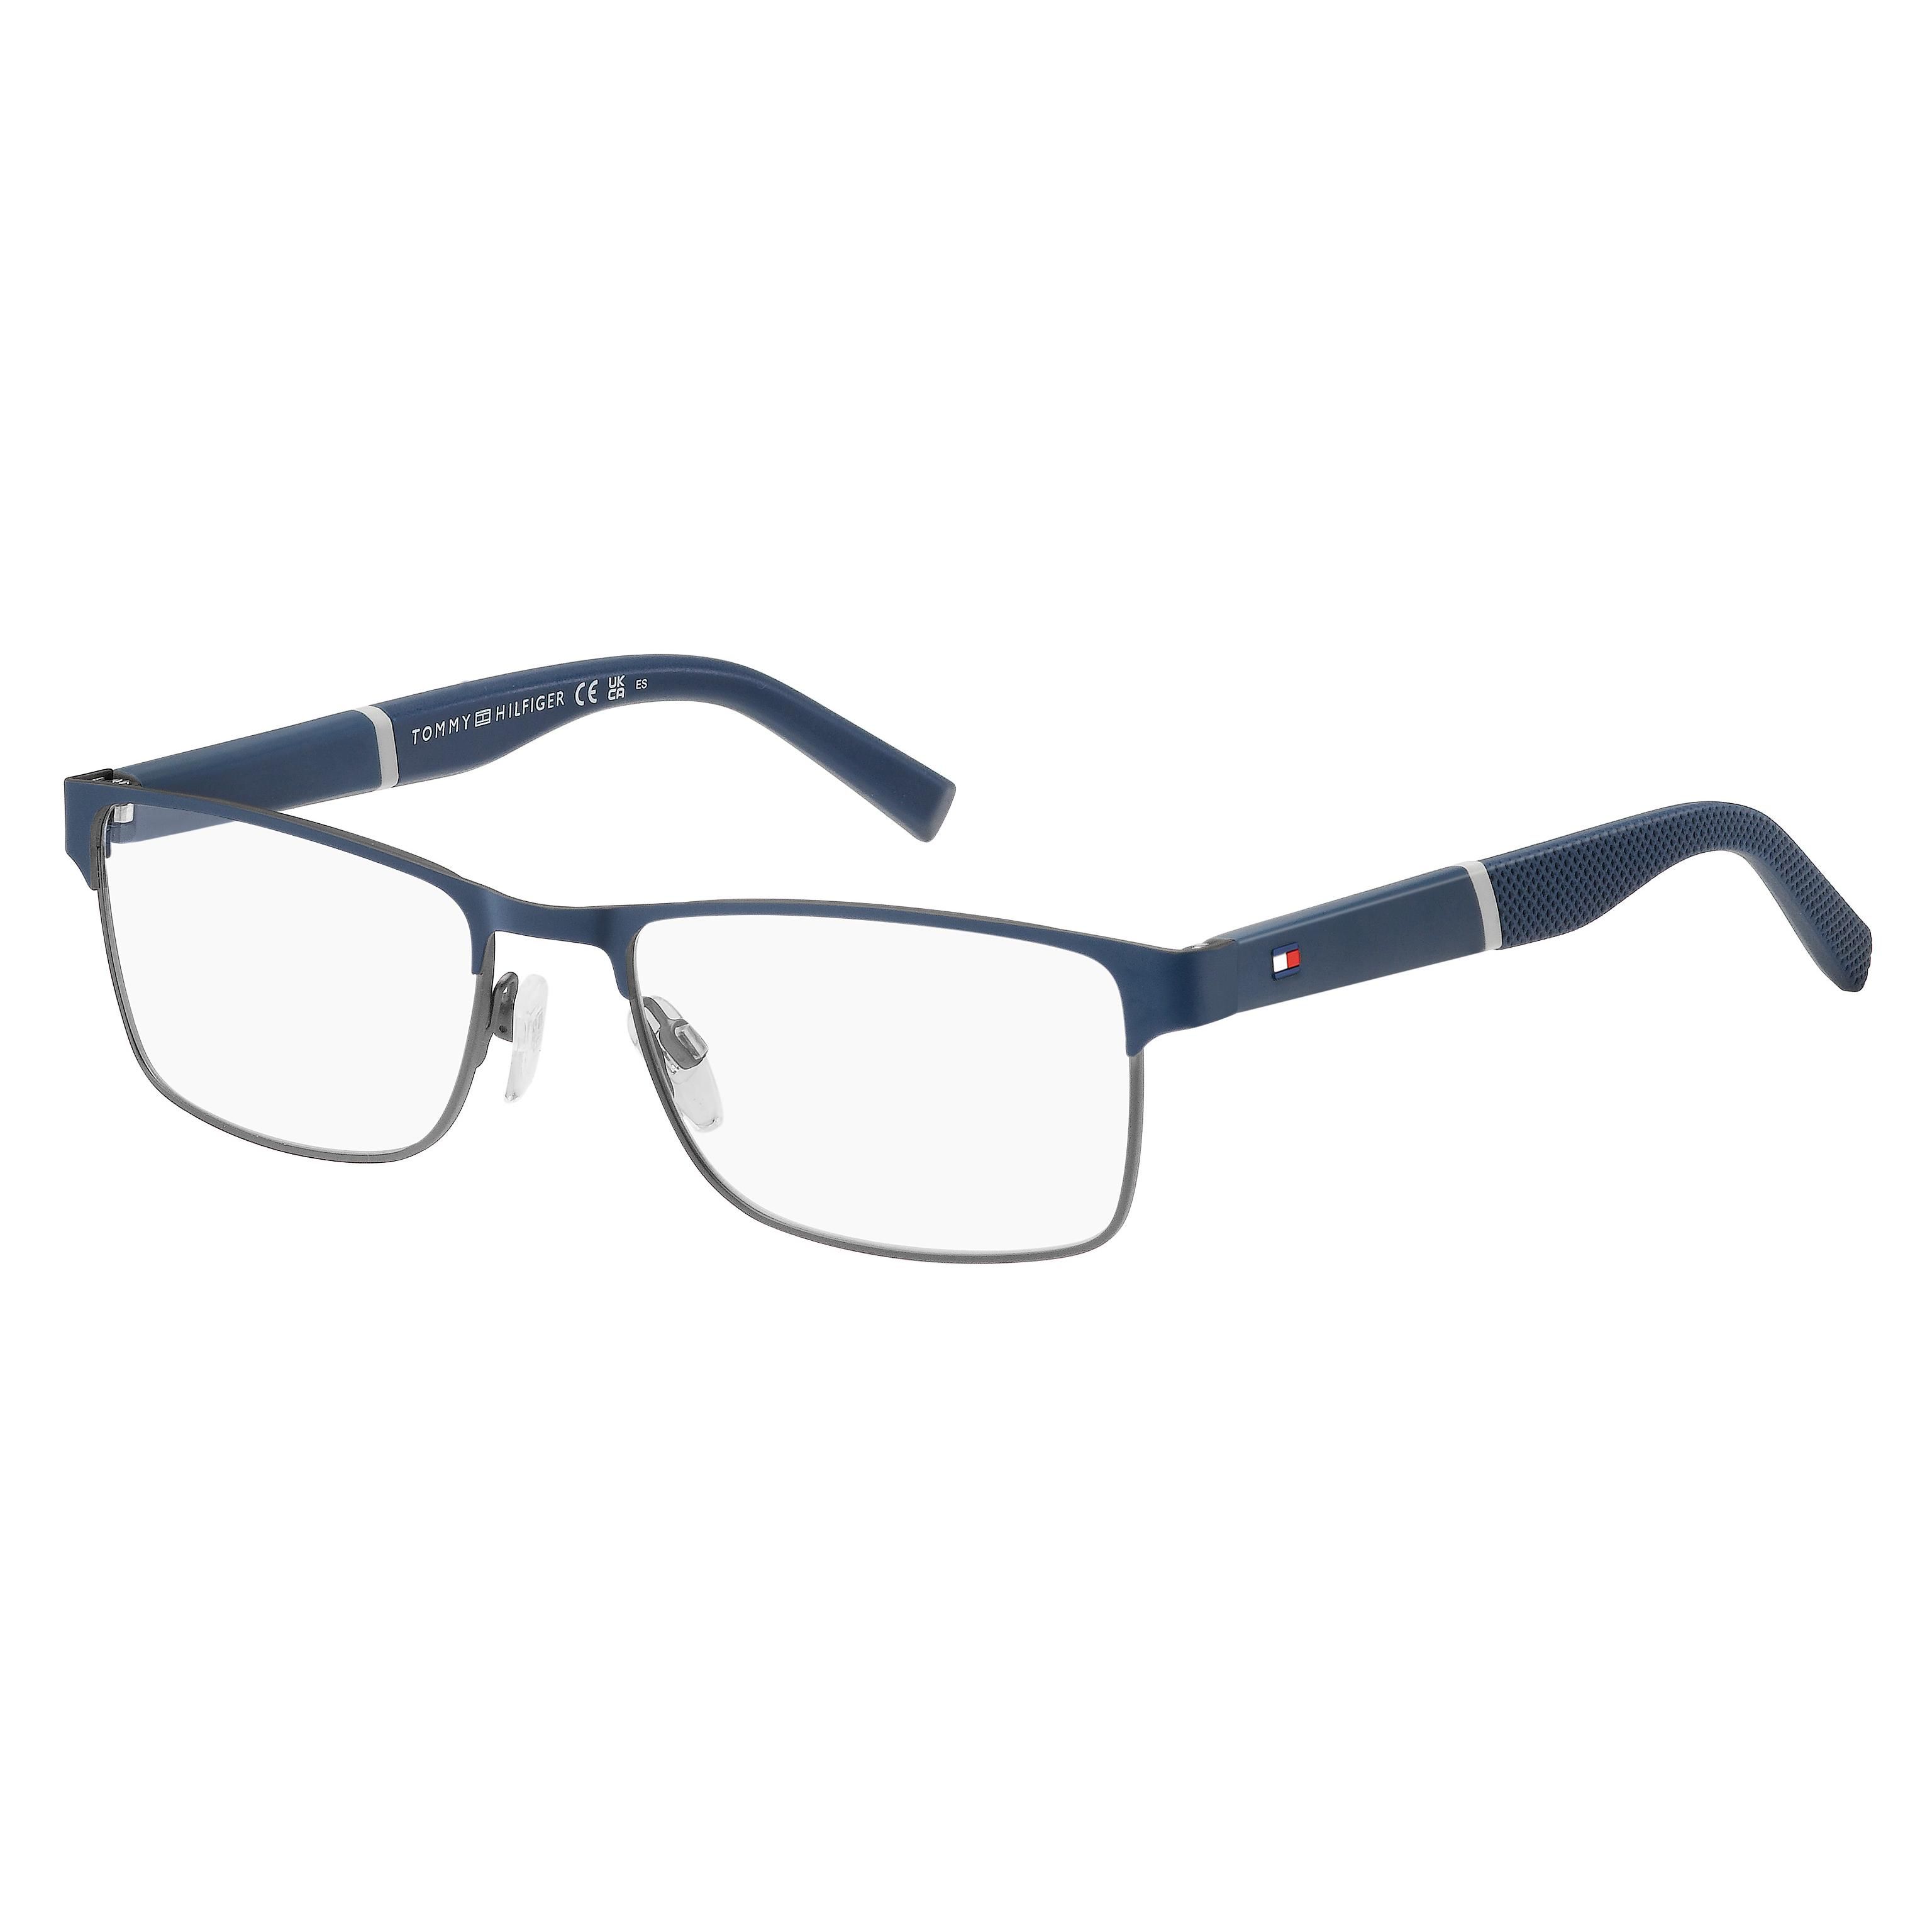 TH 2041 Rectangle Eyeglasses KU0 - size 54